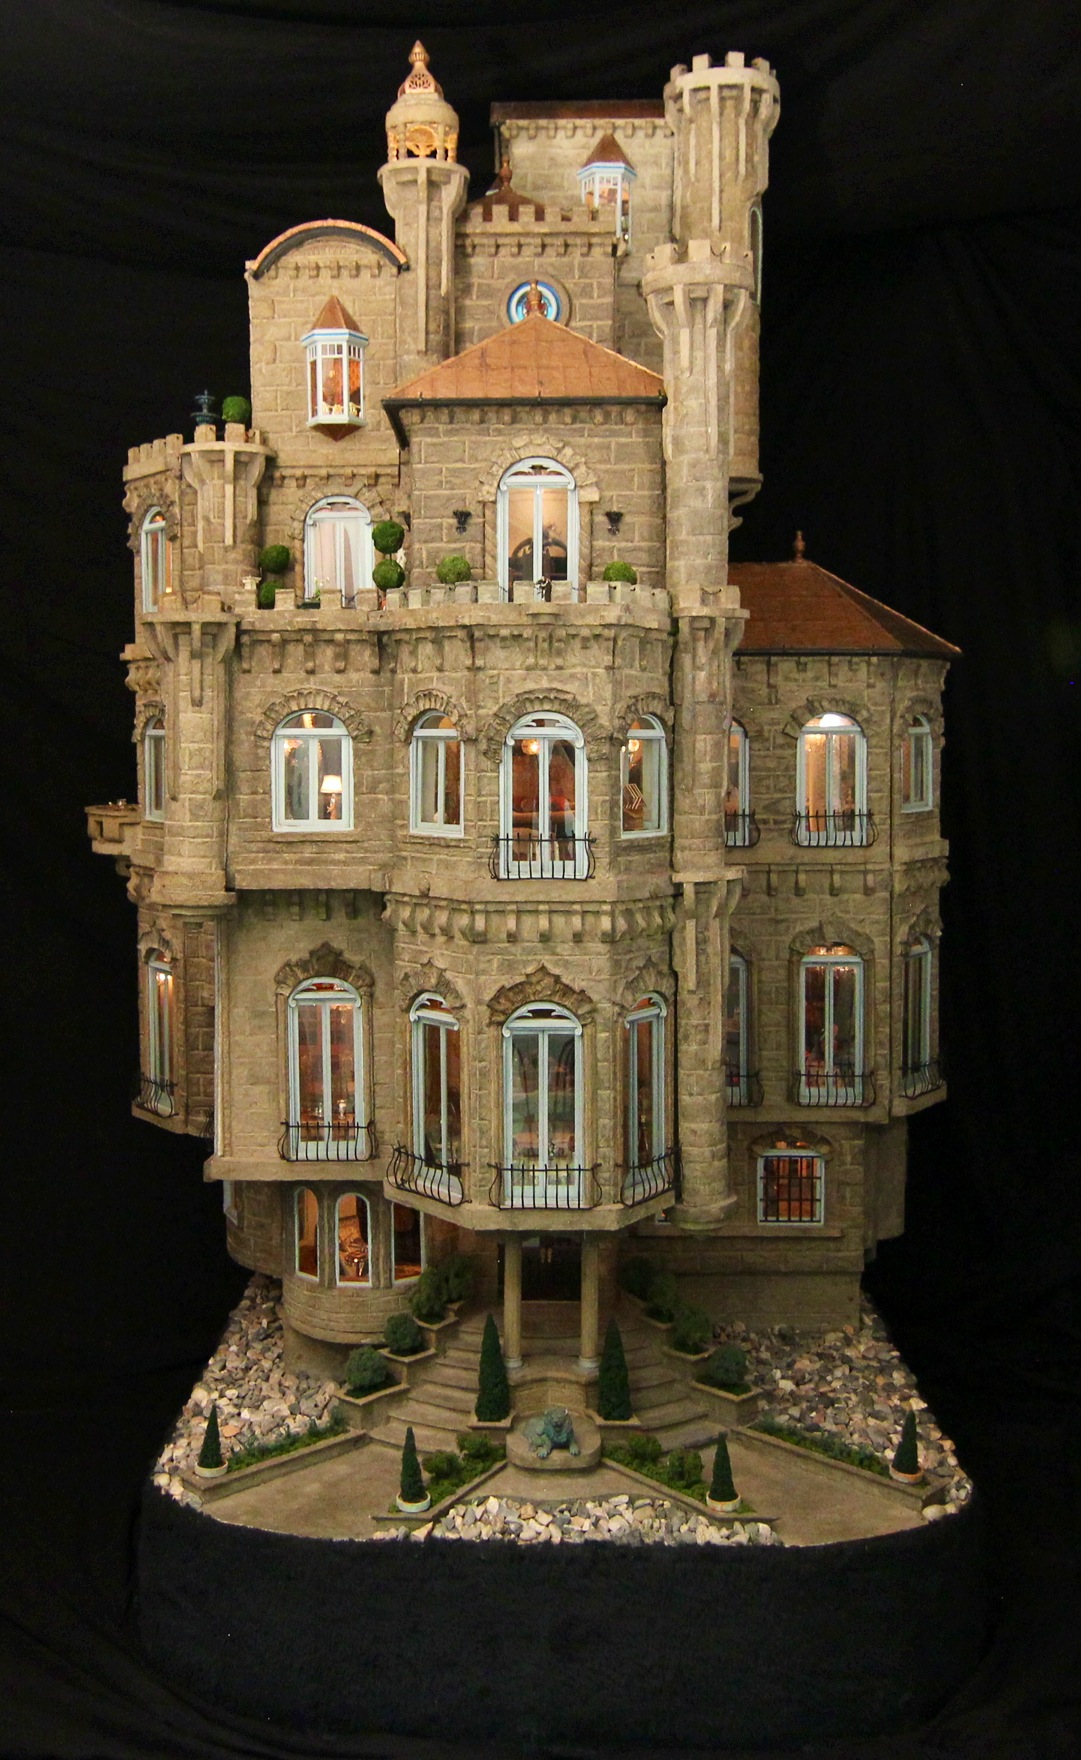 Astolat Dollhouse Castle - Wikipedia